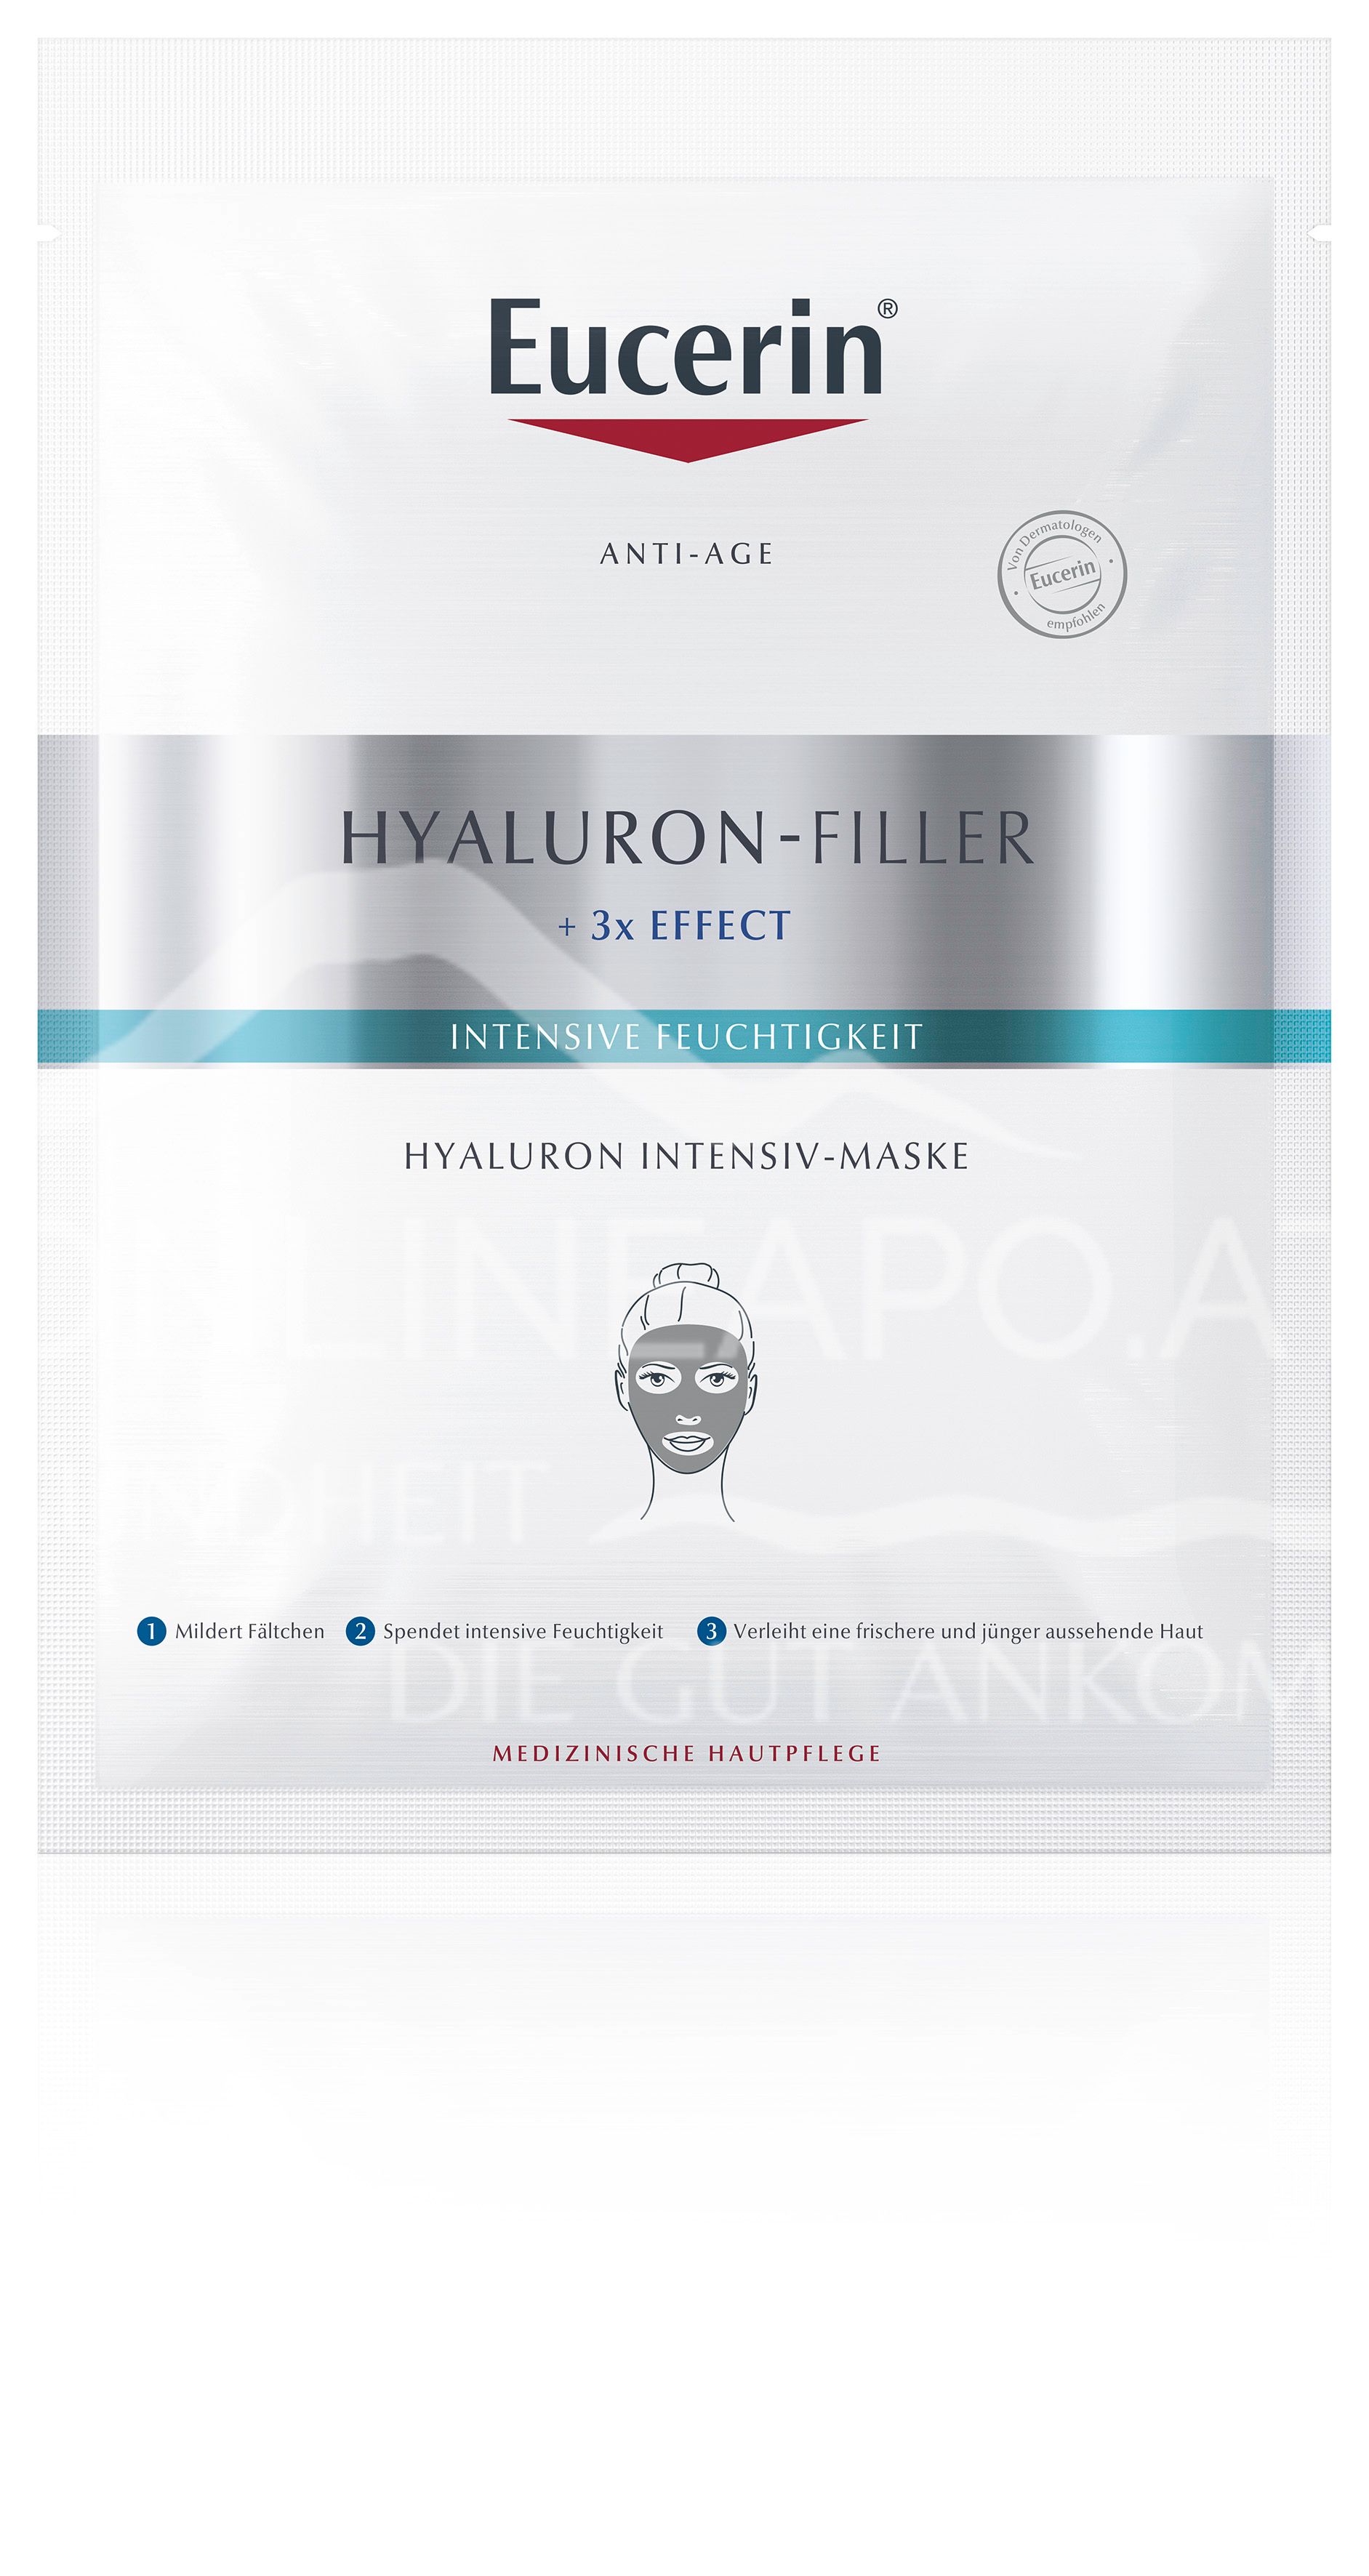 Eucerin® HYALURON-FILLER Intensiv-Maske